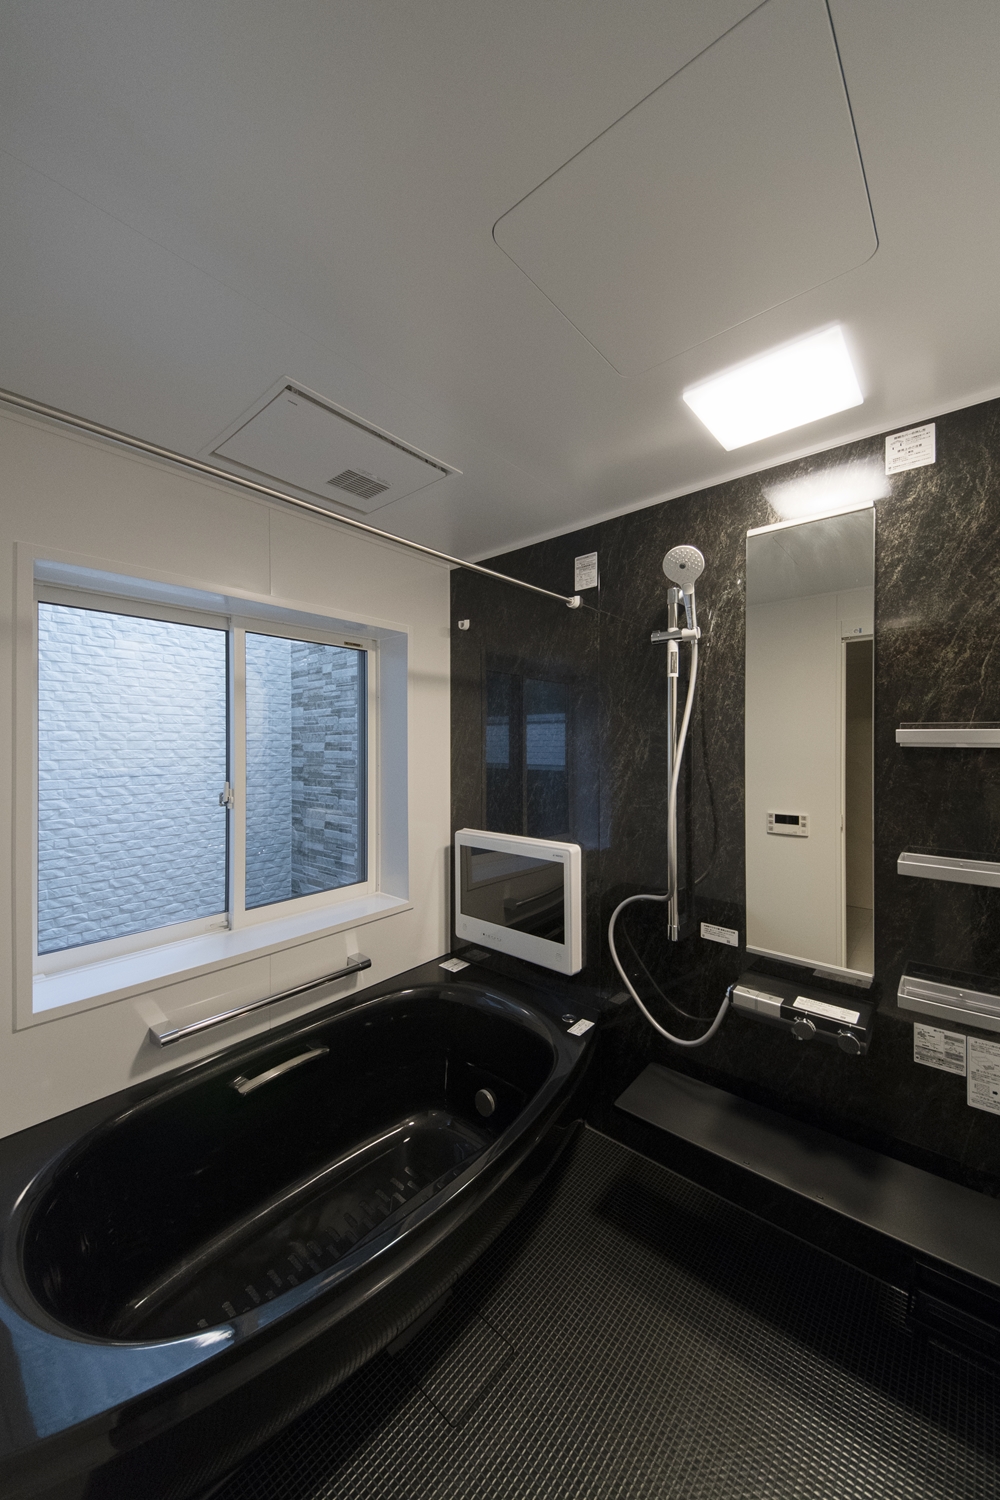 ブラックの石目調アクセントパネルが上質な空間を演出。浴槽カラーもブラックで高級感のある印象のバスルームに。